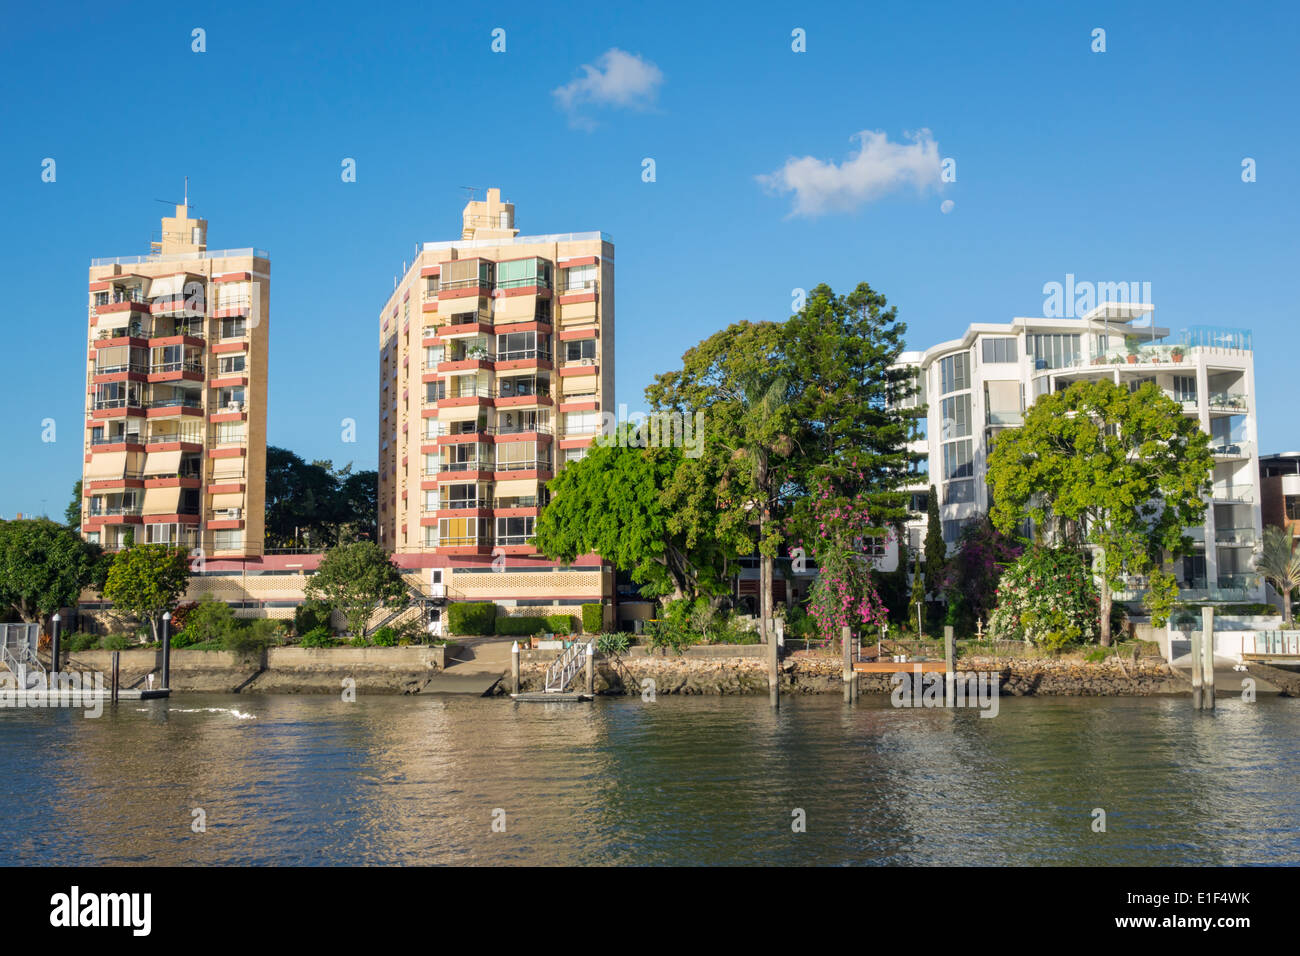 Brisbane Australie,Brisbane River,New Farm,condominium appartement résidentiel immeubles, maisons,résidences,front de mer,AU1403 Banque D'Images